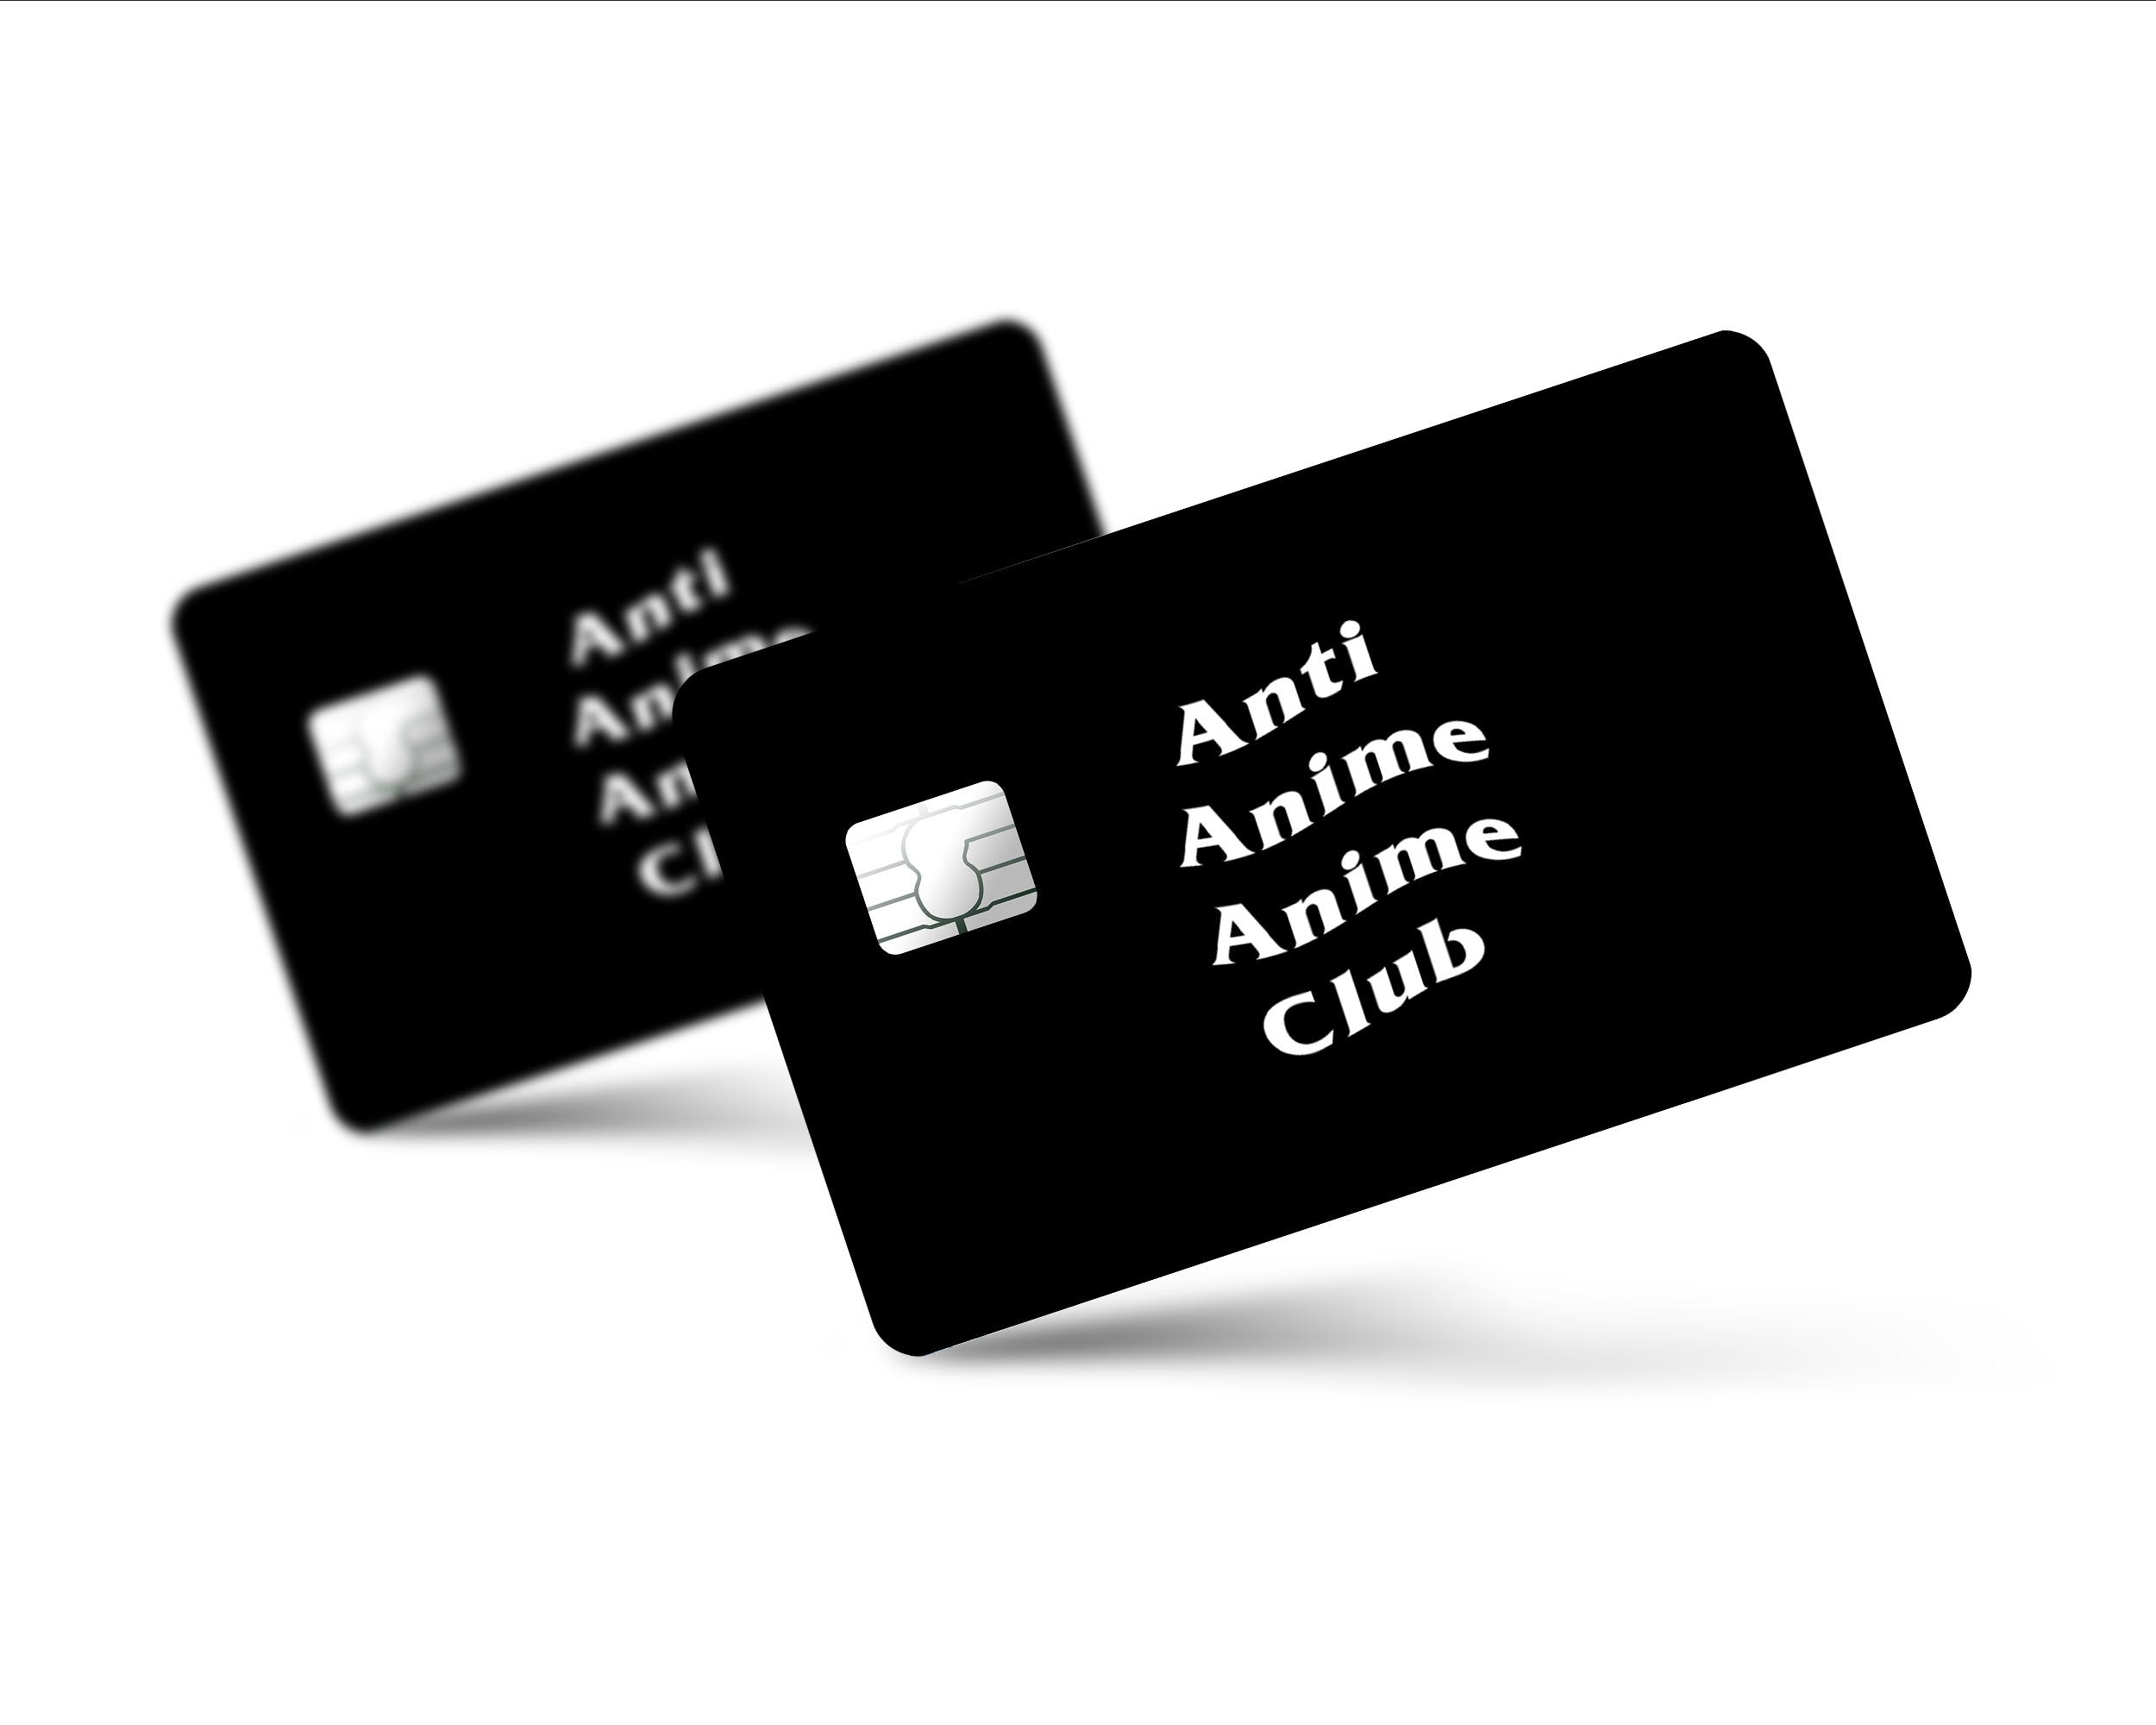 Anti Anime Anime Club | lupon.gov.ph